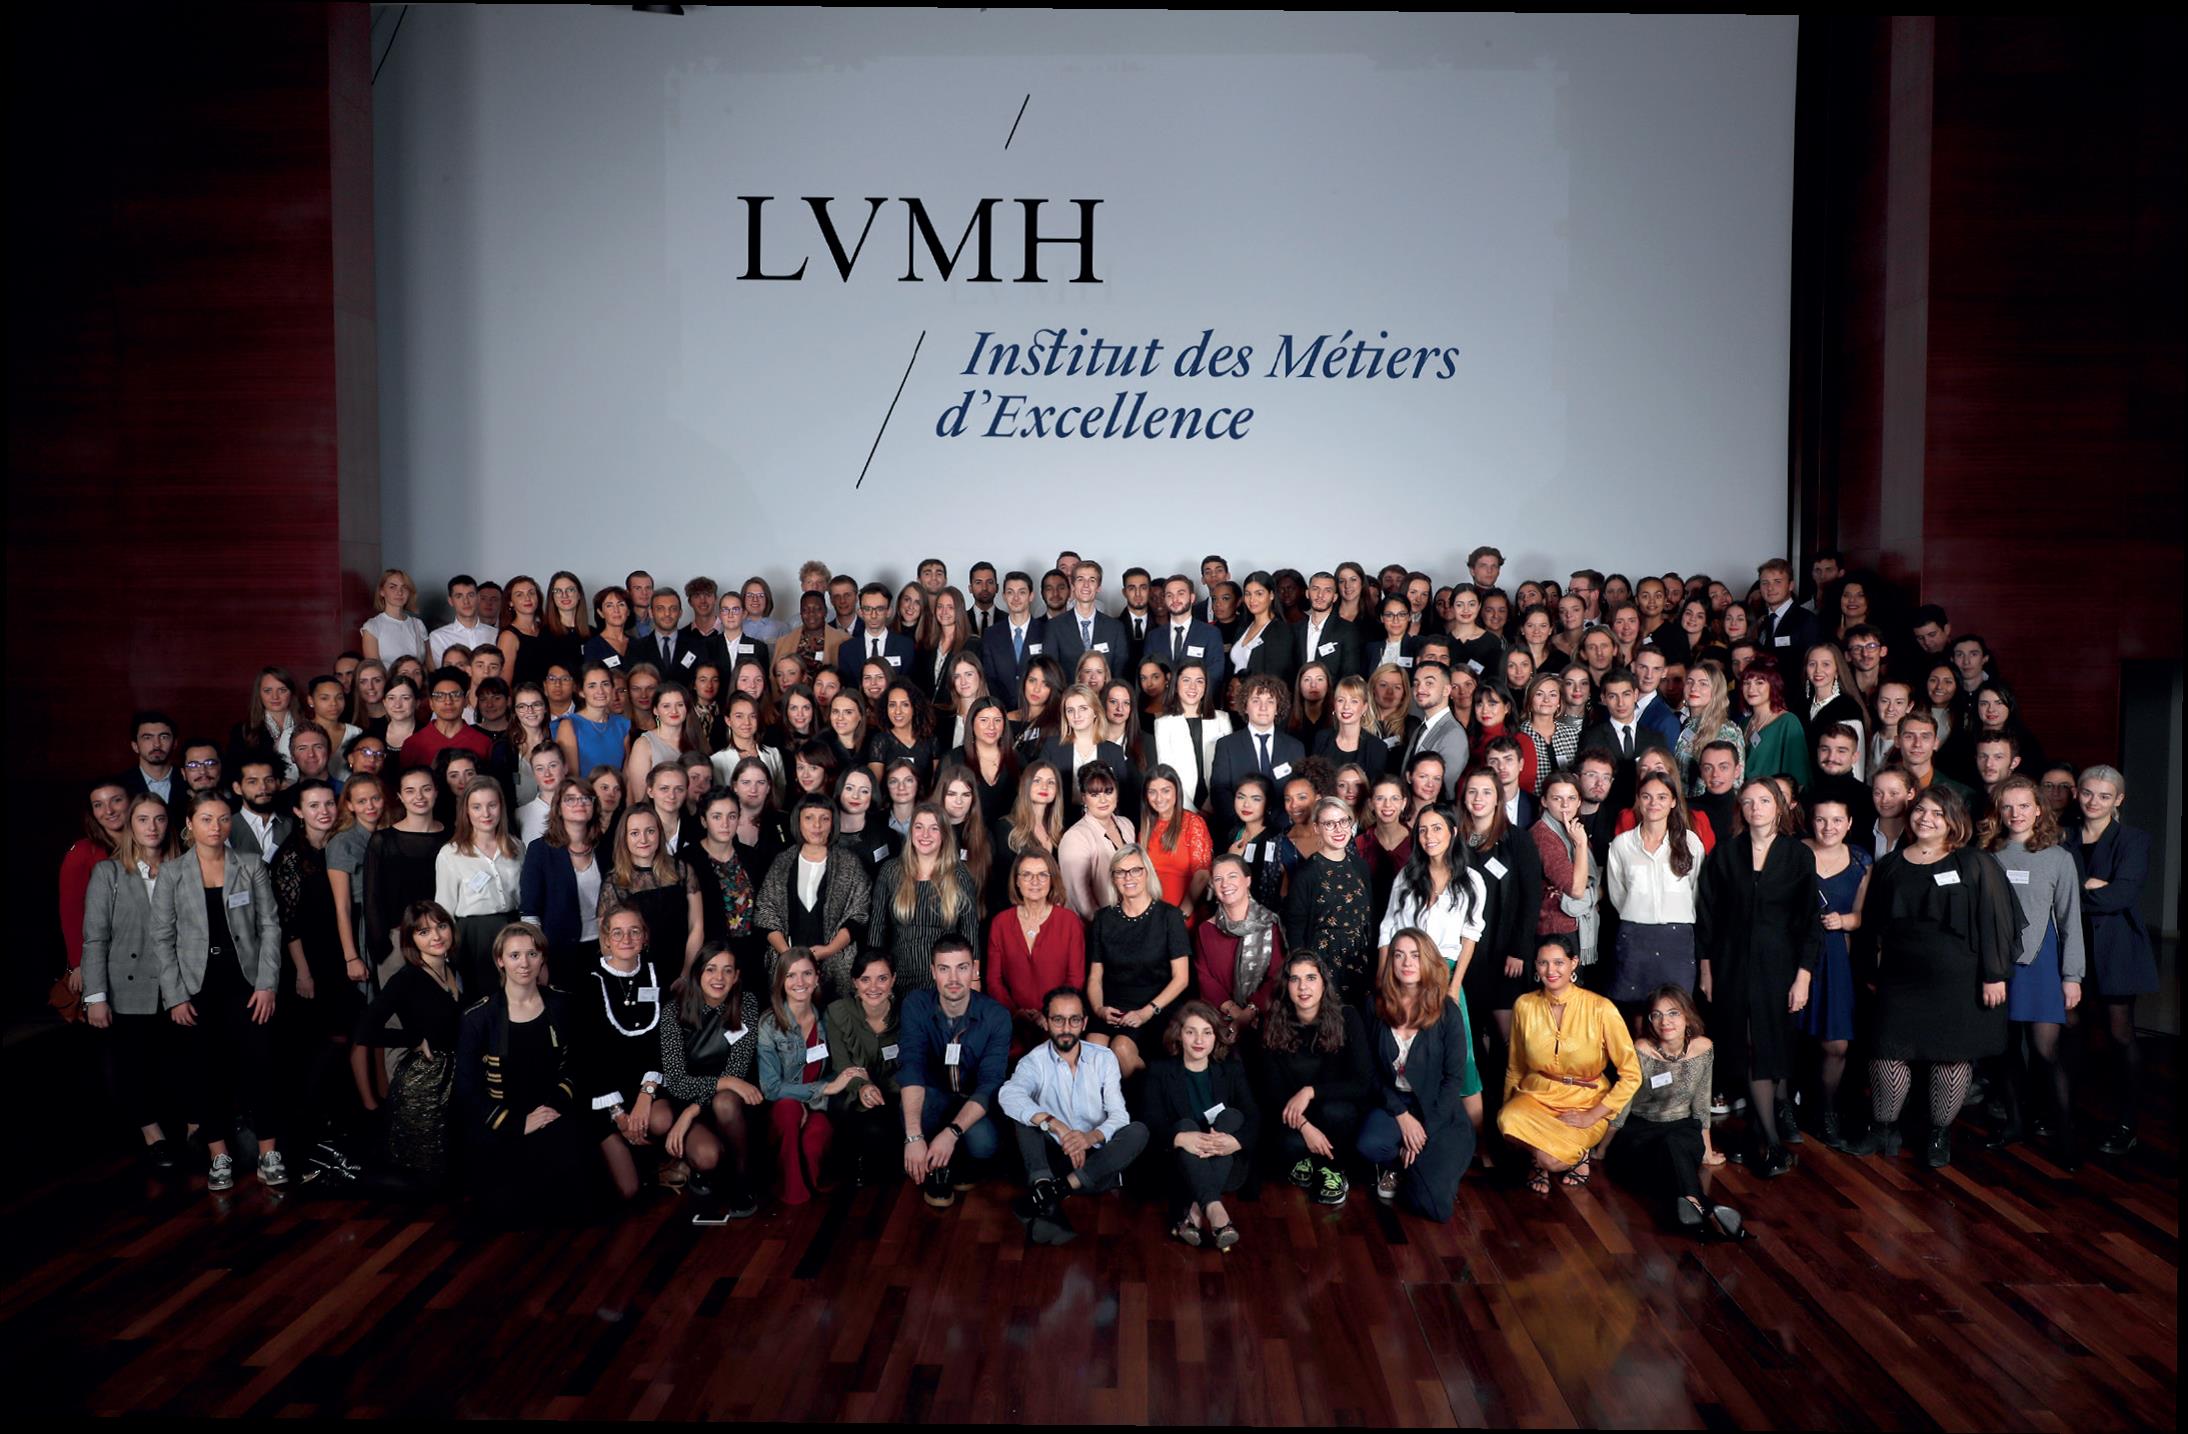 L'Institut des Métiers d'Excellence - LVMH